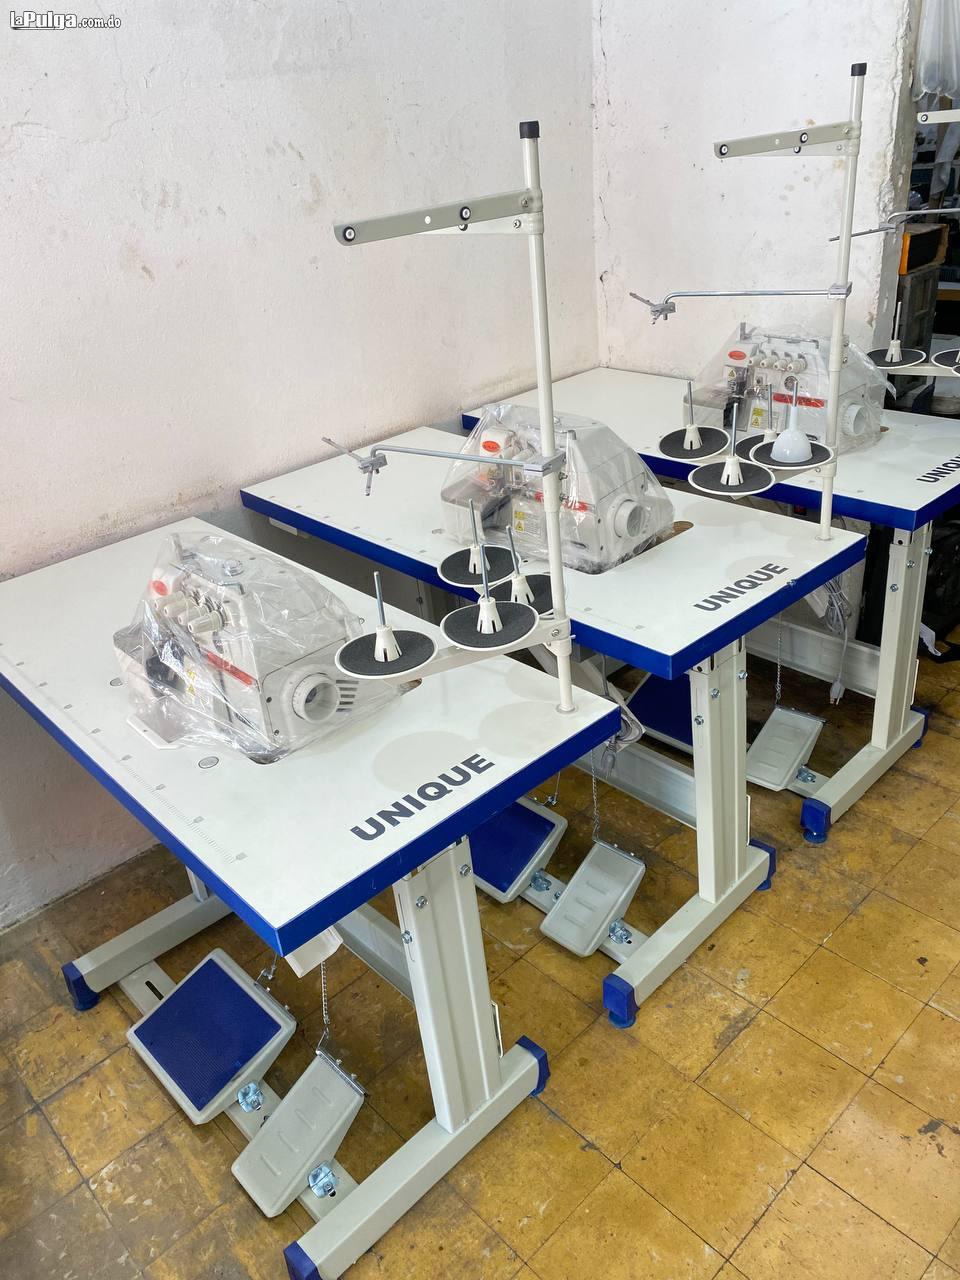 Maquinas de coser mero alta velocidad Overlock marca Siruba 4 hilos Foto 7142513-5.jpg